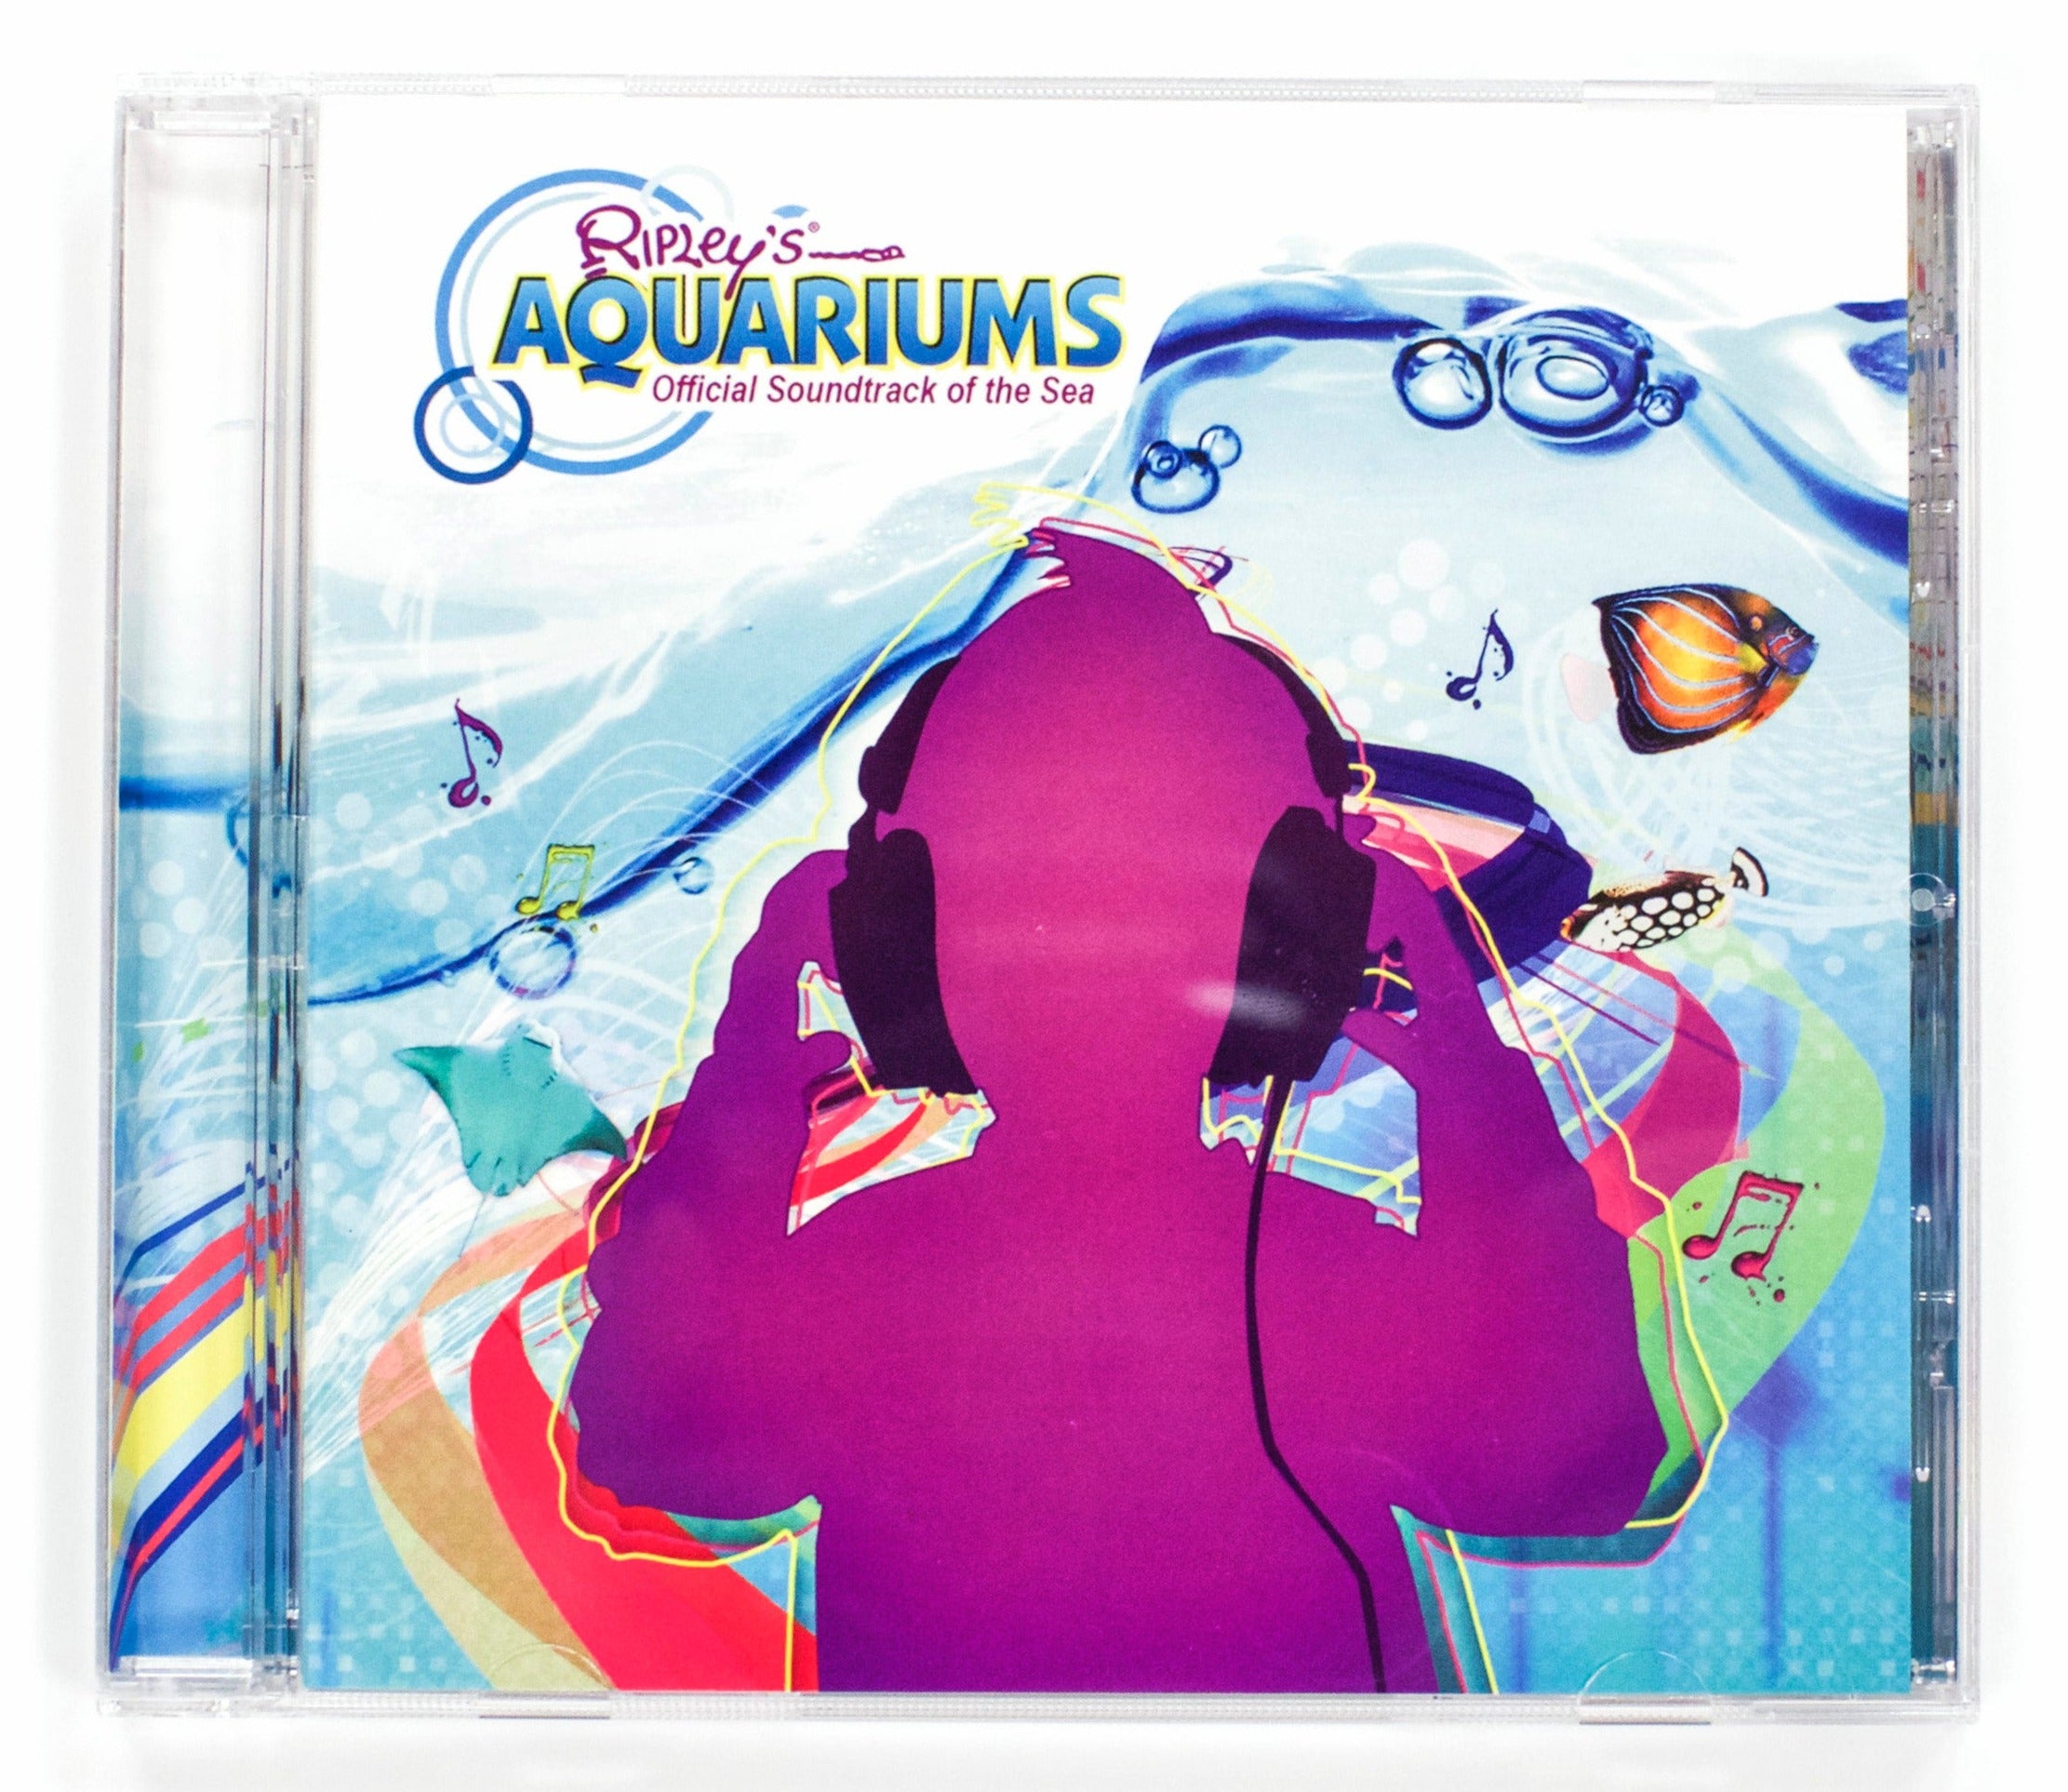 Ripley's Aquarium of Canada: Official Soundtrack of the Sea